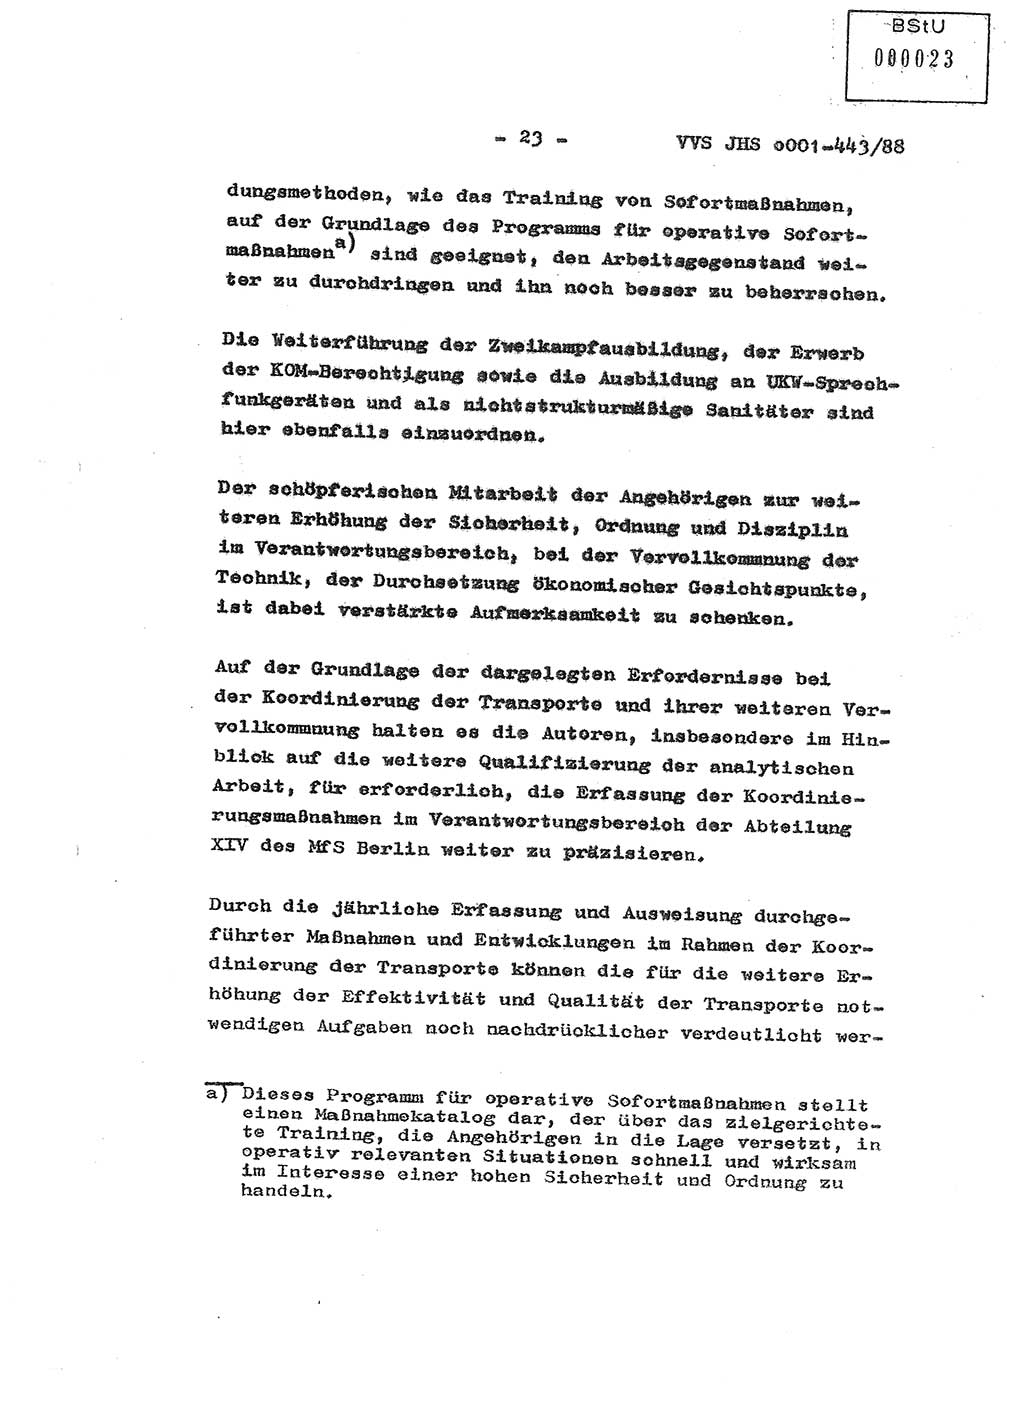 Diplomarbeit Hauptmann Michael Rast (Abt. ⅩⅣ), Major Bernd Rahaus (Abt. ⅩⅣ), Ministerium für Staatssicherheit (MfS) [Deutsche Demokratische Republik (DDR)], Juristische Hochschule (JHS), Vertrauliche Verschlußsache (VVS) o001-443/88, Potsdam 1988, Seite 23 (Dipl.-Arb. MfS DDR JHS VVS o001-443/88 1988, S. 23)